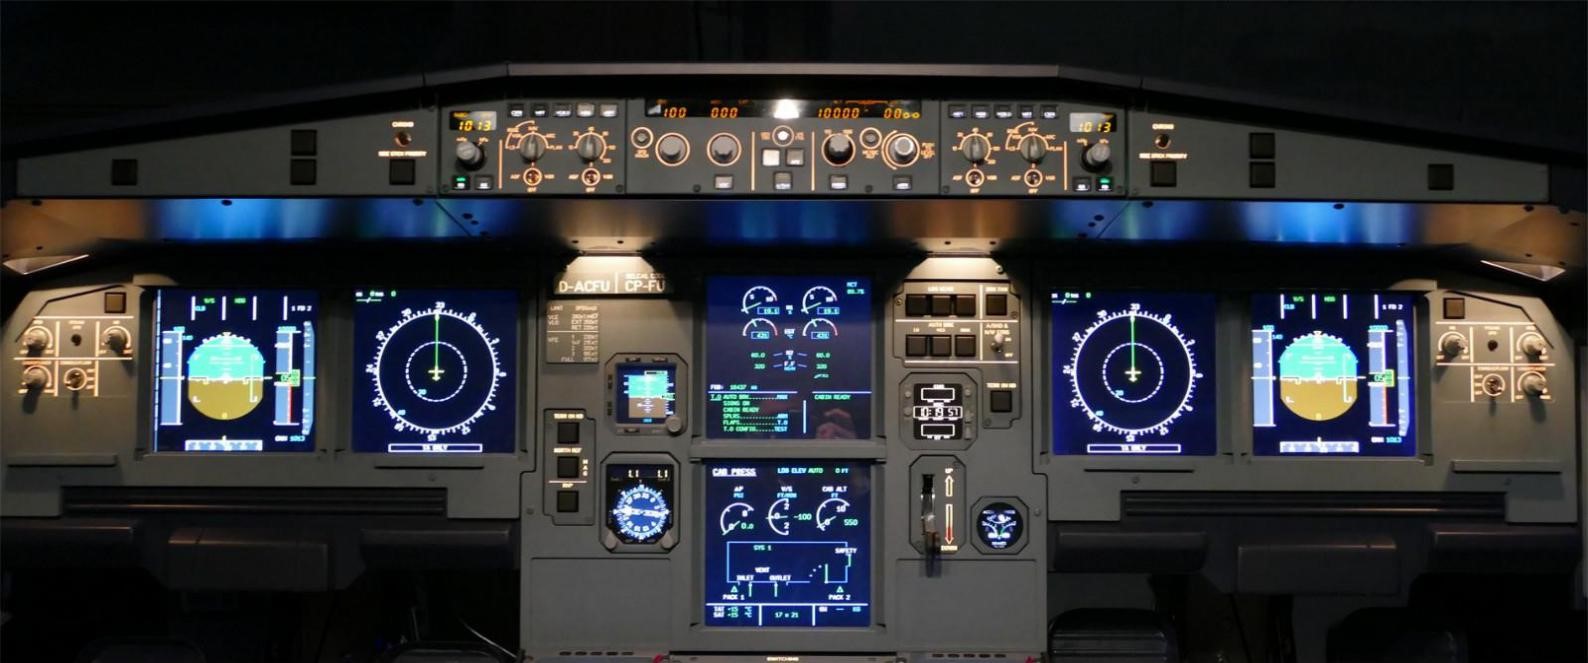 飞行者联盟空客A320模拟舱 整舱产品发布！-6618 